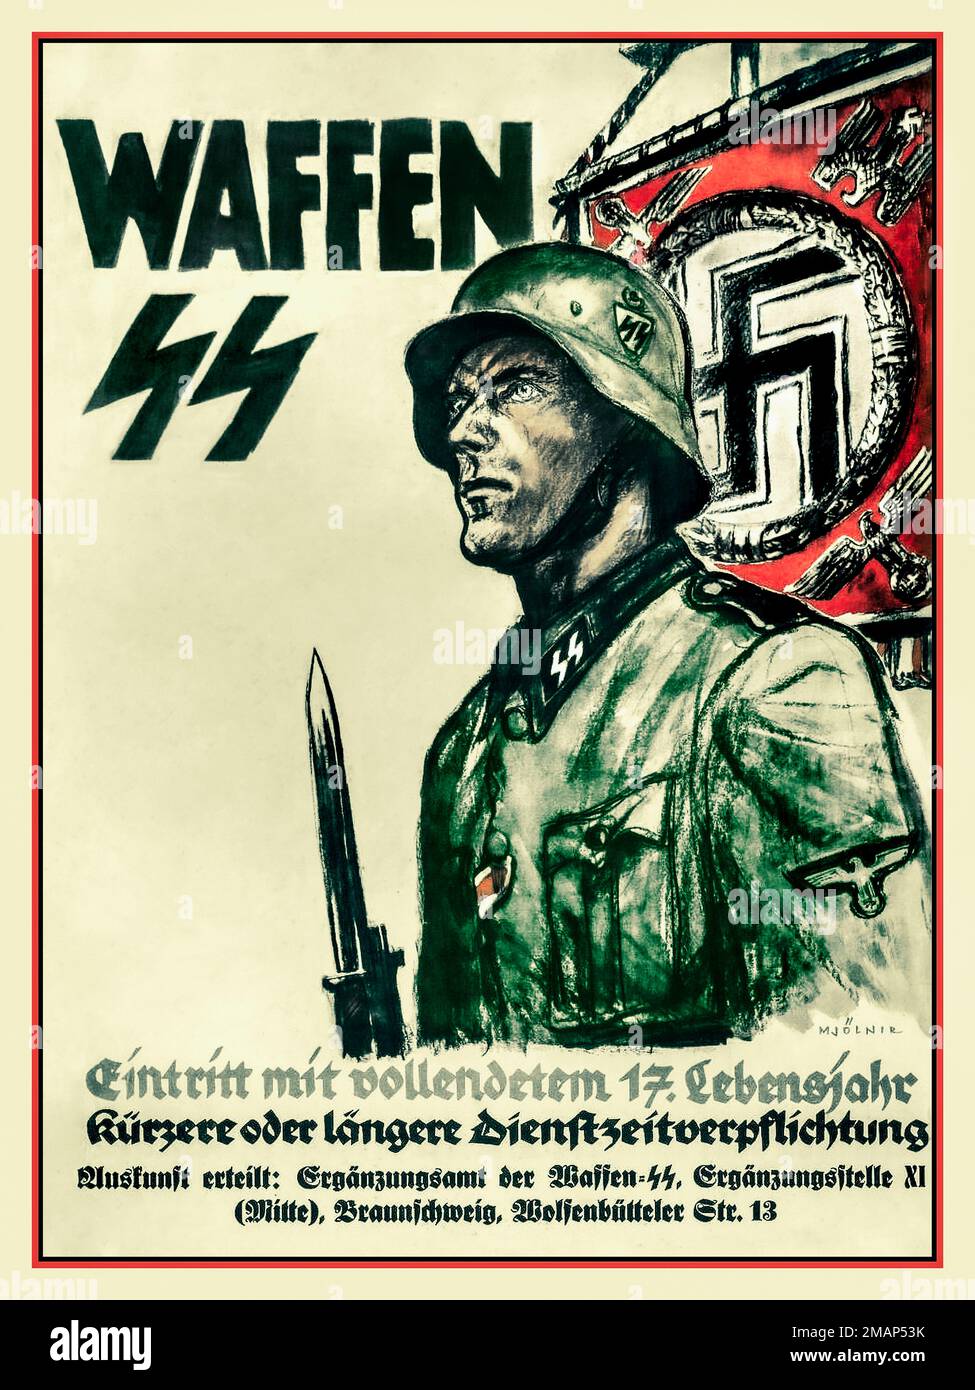 1941 Waffen SS Recruitment Poster 1941-Waffen-SS.-Eintritt-mit-vollendetem-17-Lebensjahr- Nazi Germany Stock Photo